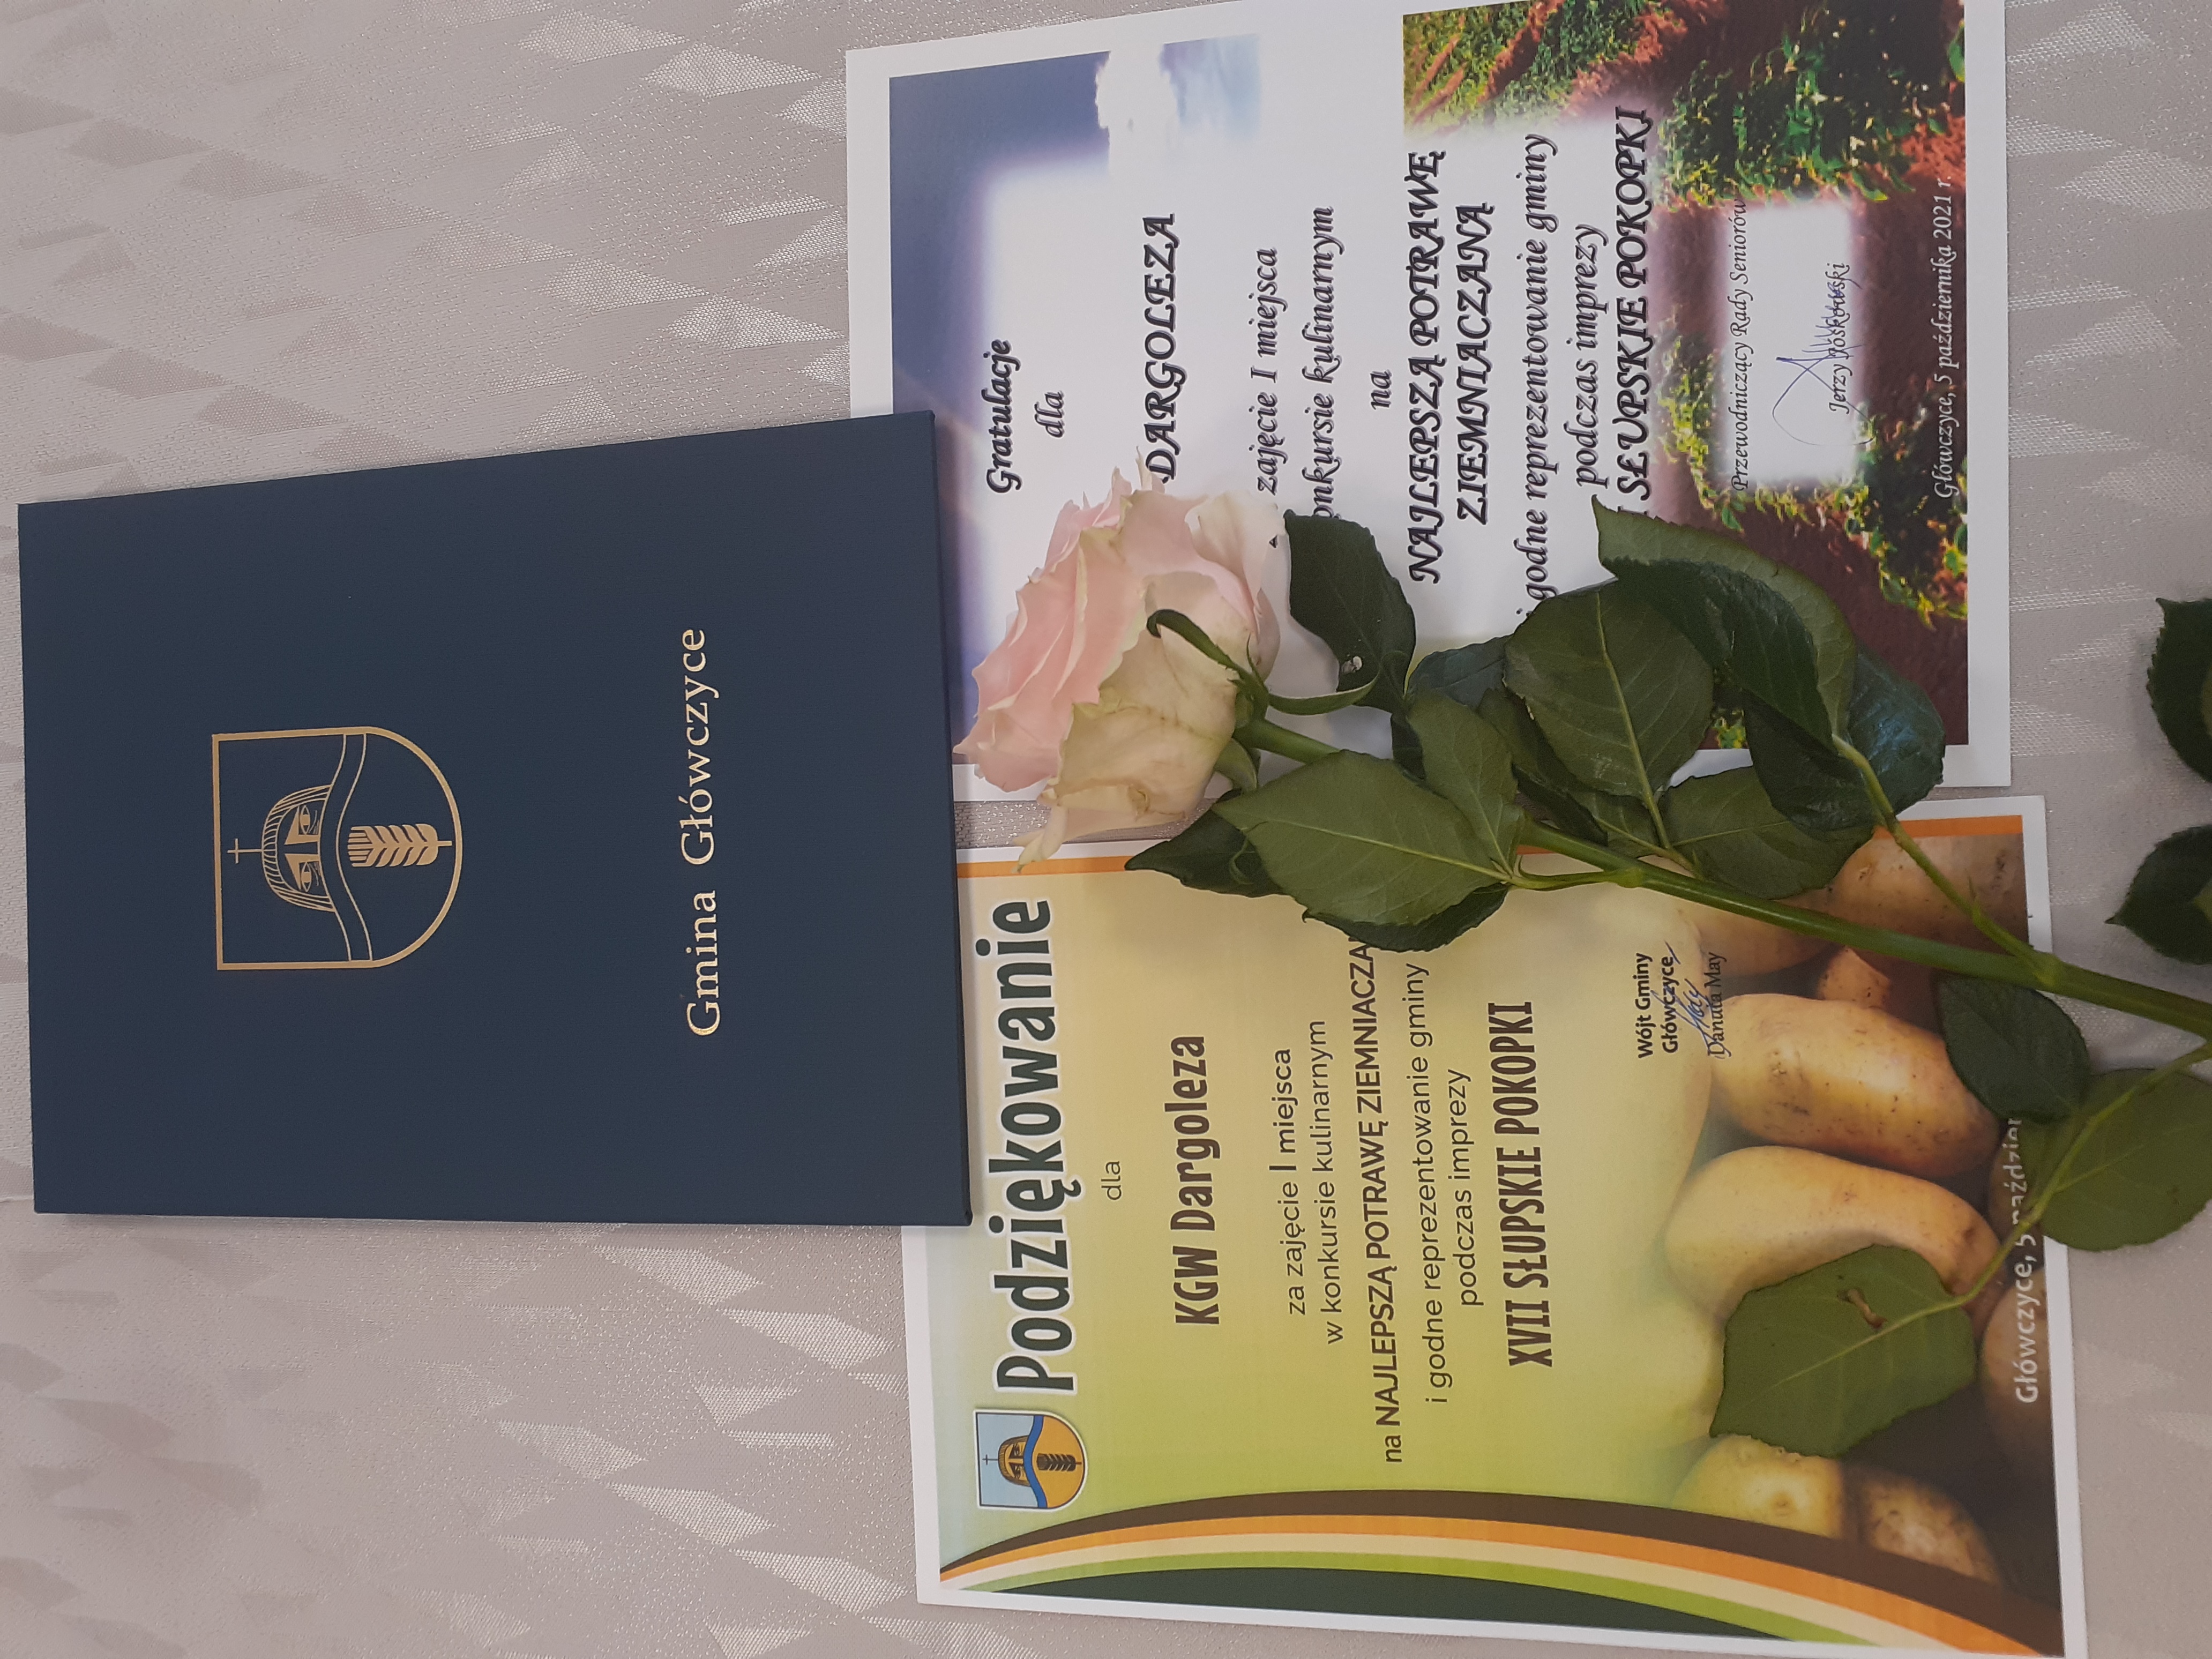 Ułłożone na stole: podziękowanie i gratulacje dla KGW w formie dyplomu oraz róża.